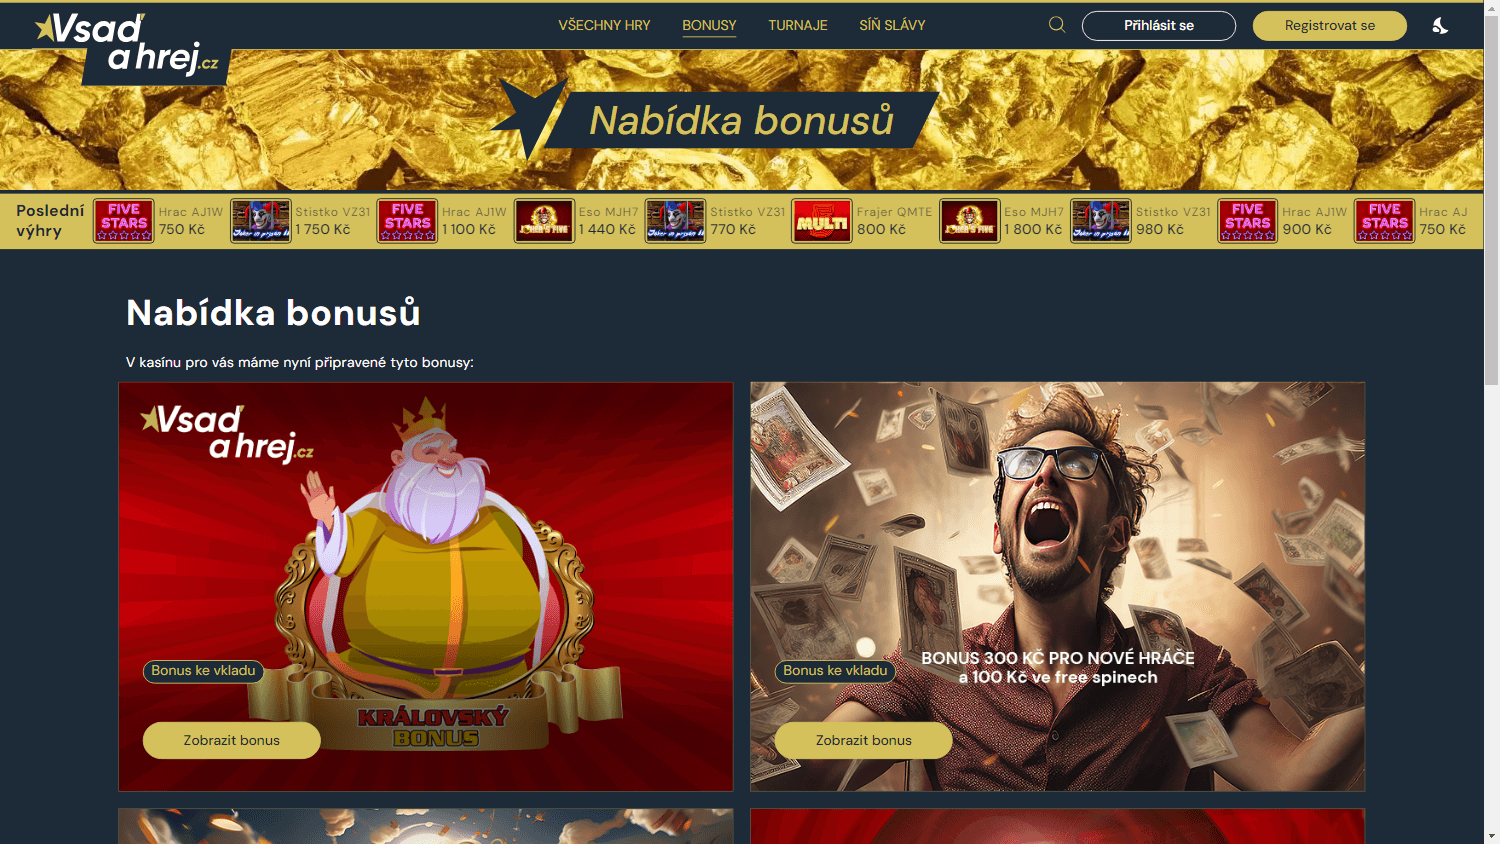 vsaď_a_hrej_casino_promotions_desktop